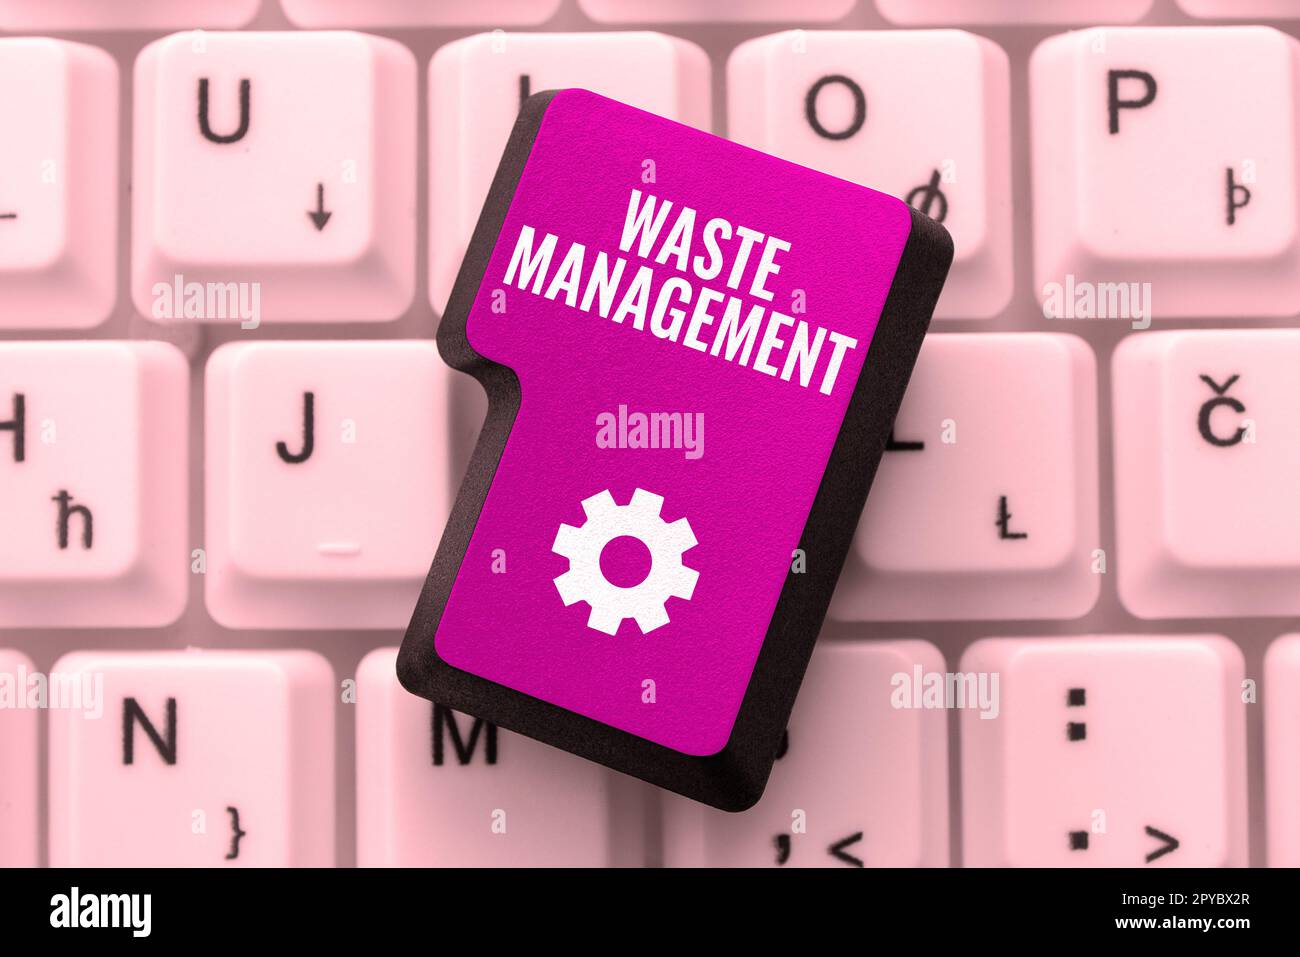 Affichage conceptuel gestion des déchets. Les mesures d'idées commerciales requises permettent de gérer la mise en œuvre des déchets jusqu'à leur élimination finale Banque D'Images